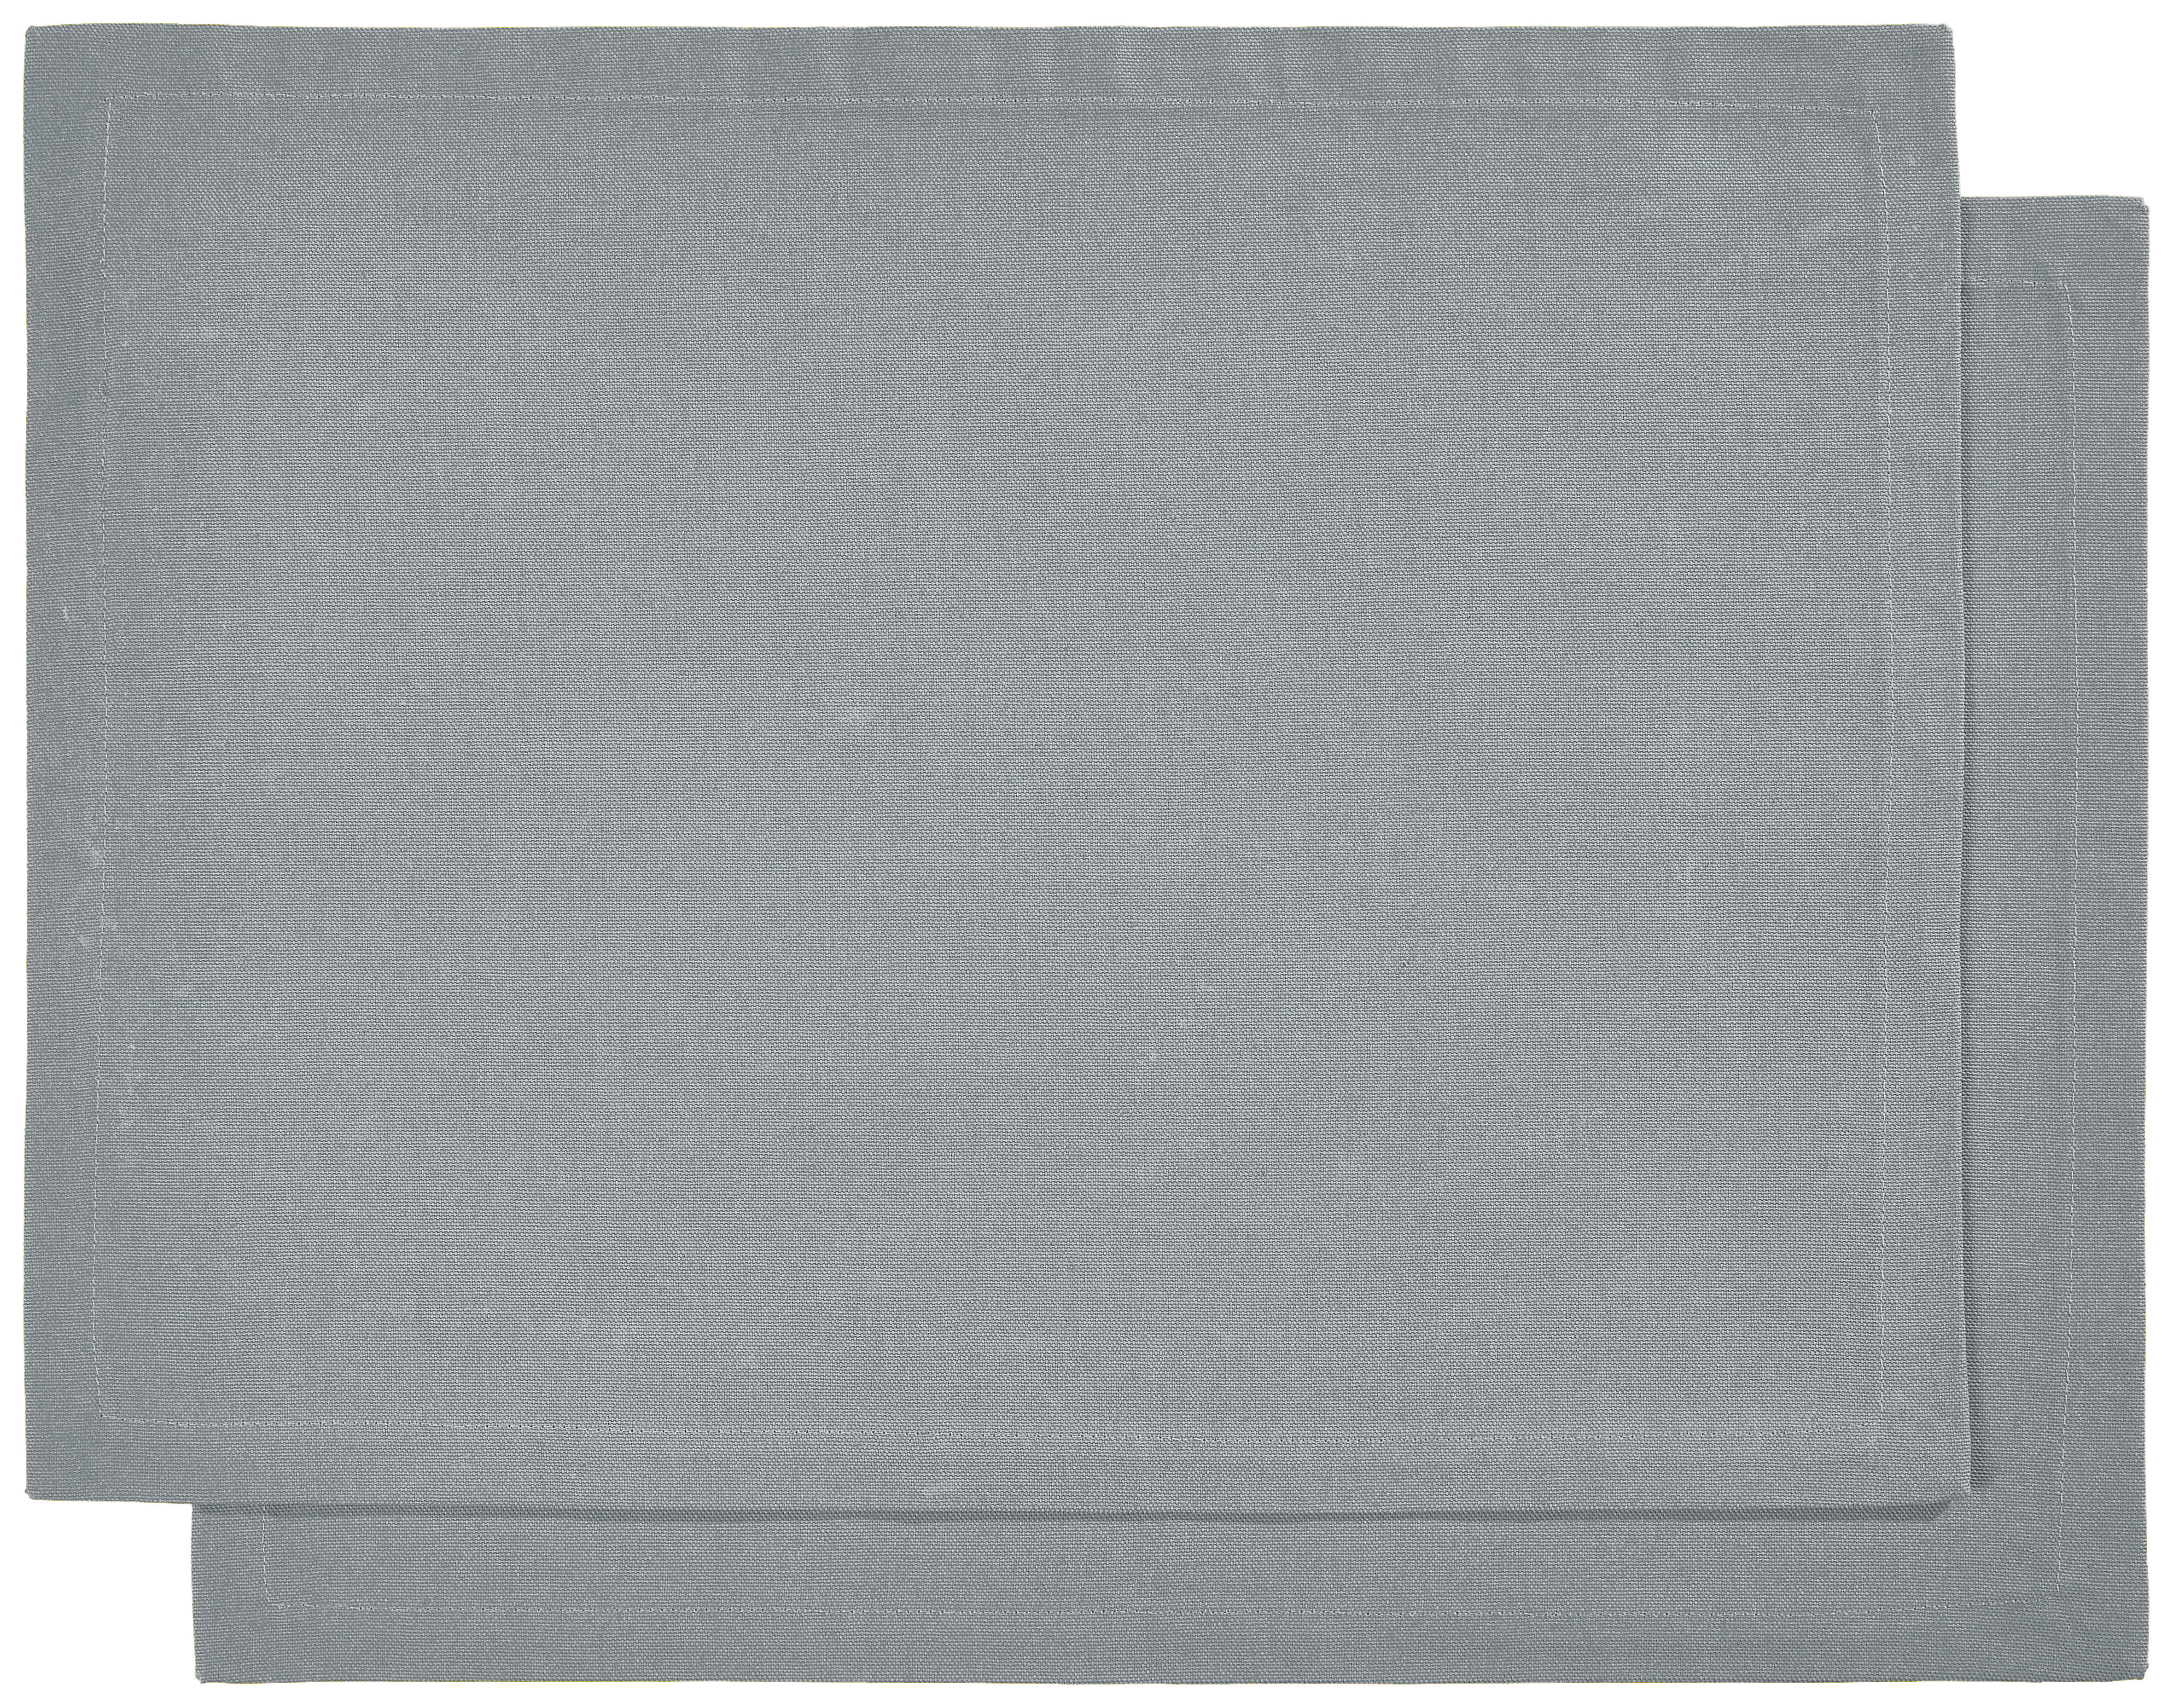 TISCHSET Textil Blau 33/45 cm  - Blau, Basics, Textil (33/45cm) - Bio:Vio